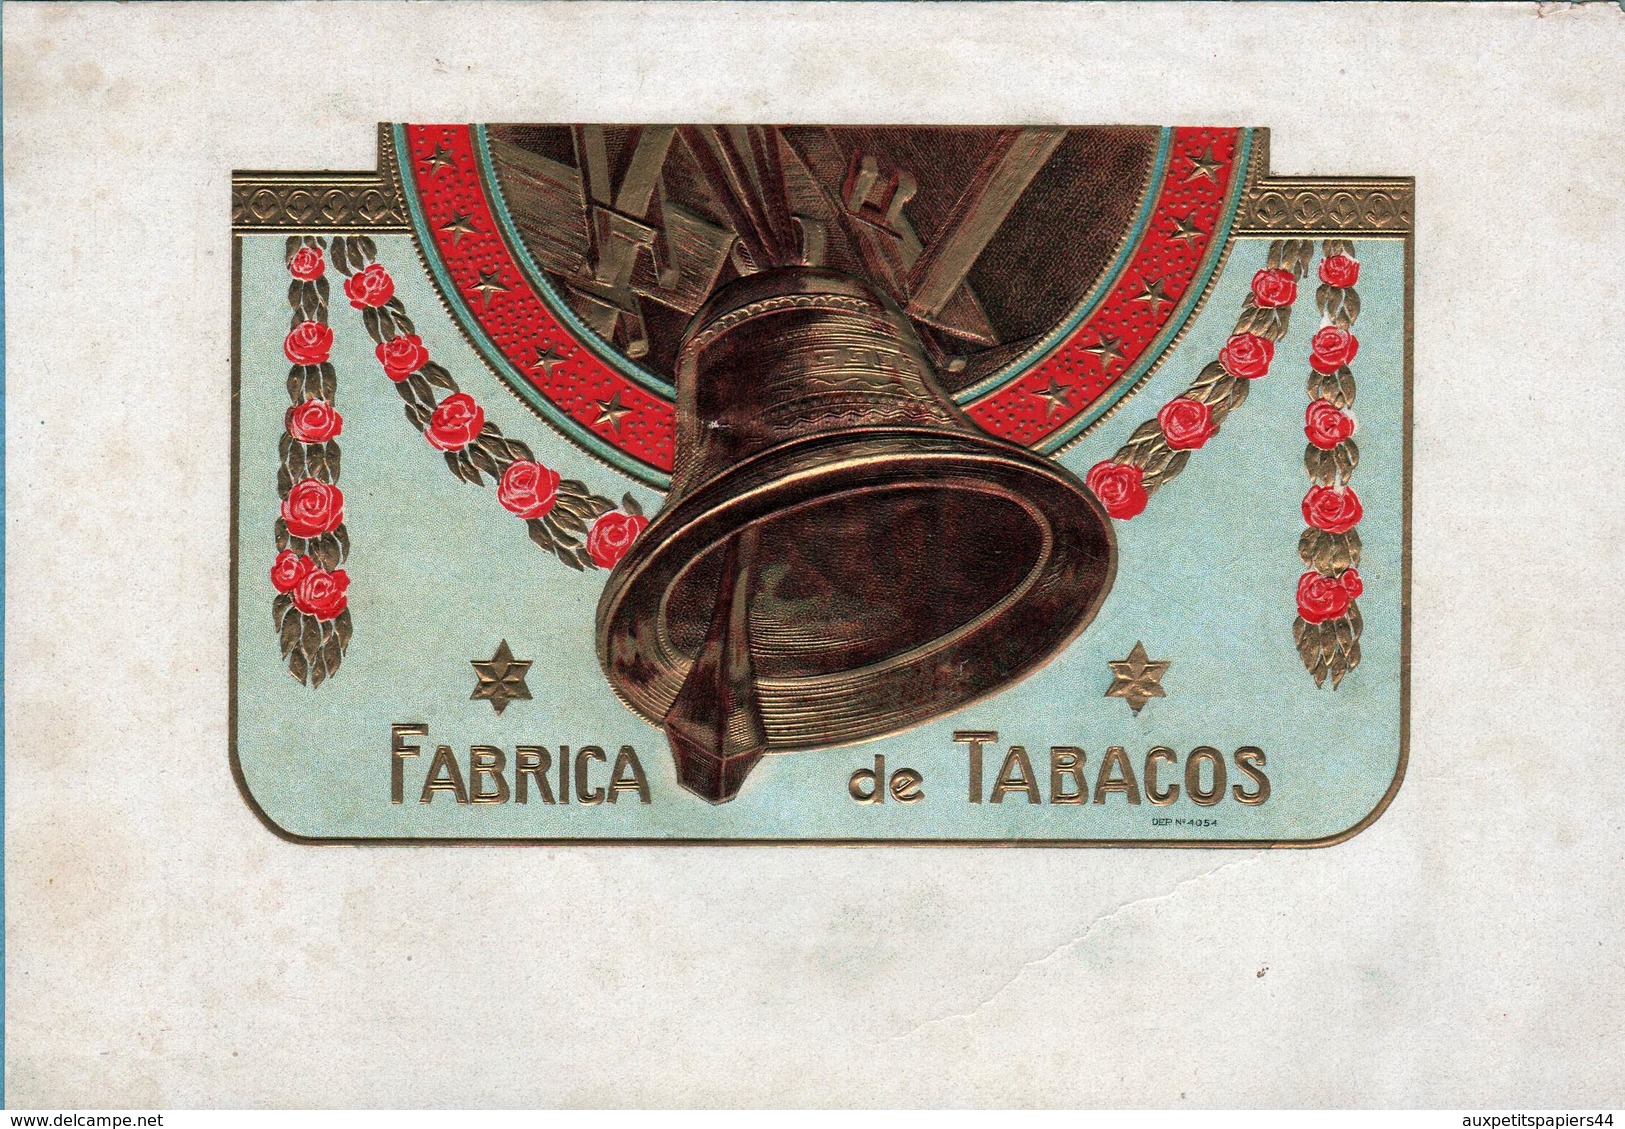 Collection 45 Anciennes étiquettes Dorées Gaufrées de Cigares Rosadora, Flor, Vigtoire, Esquisitos, Factoria, Diplomatic